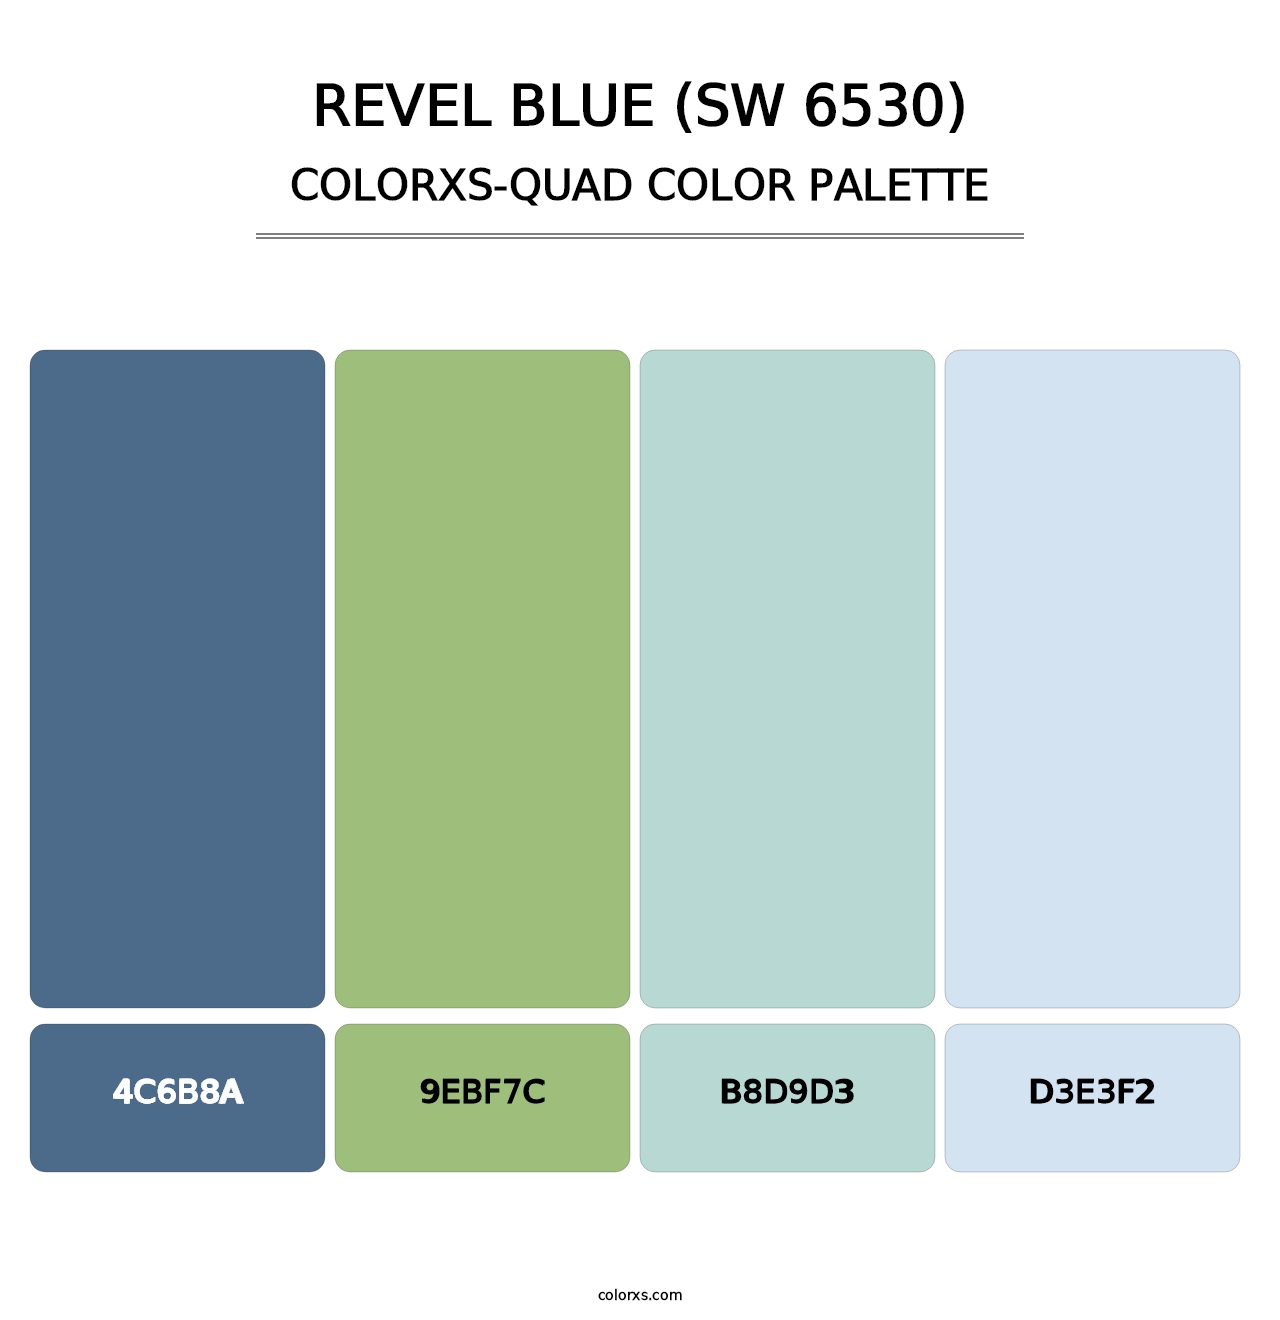 Revel Blue (SW 6530) - Colorxs Quad Palette